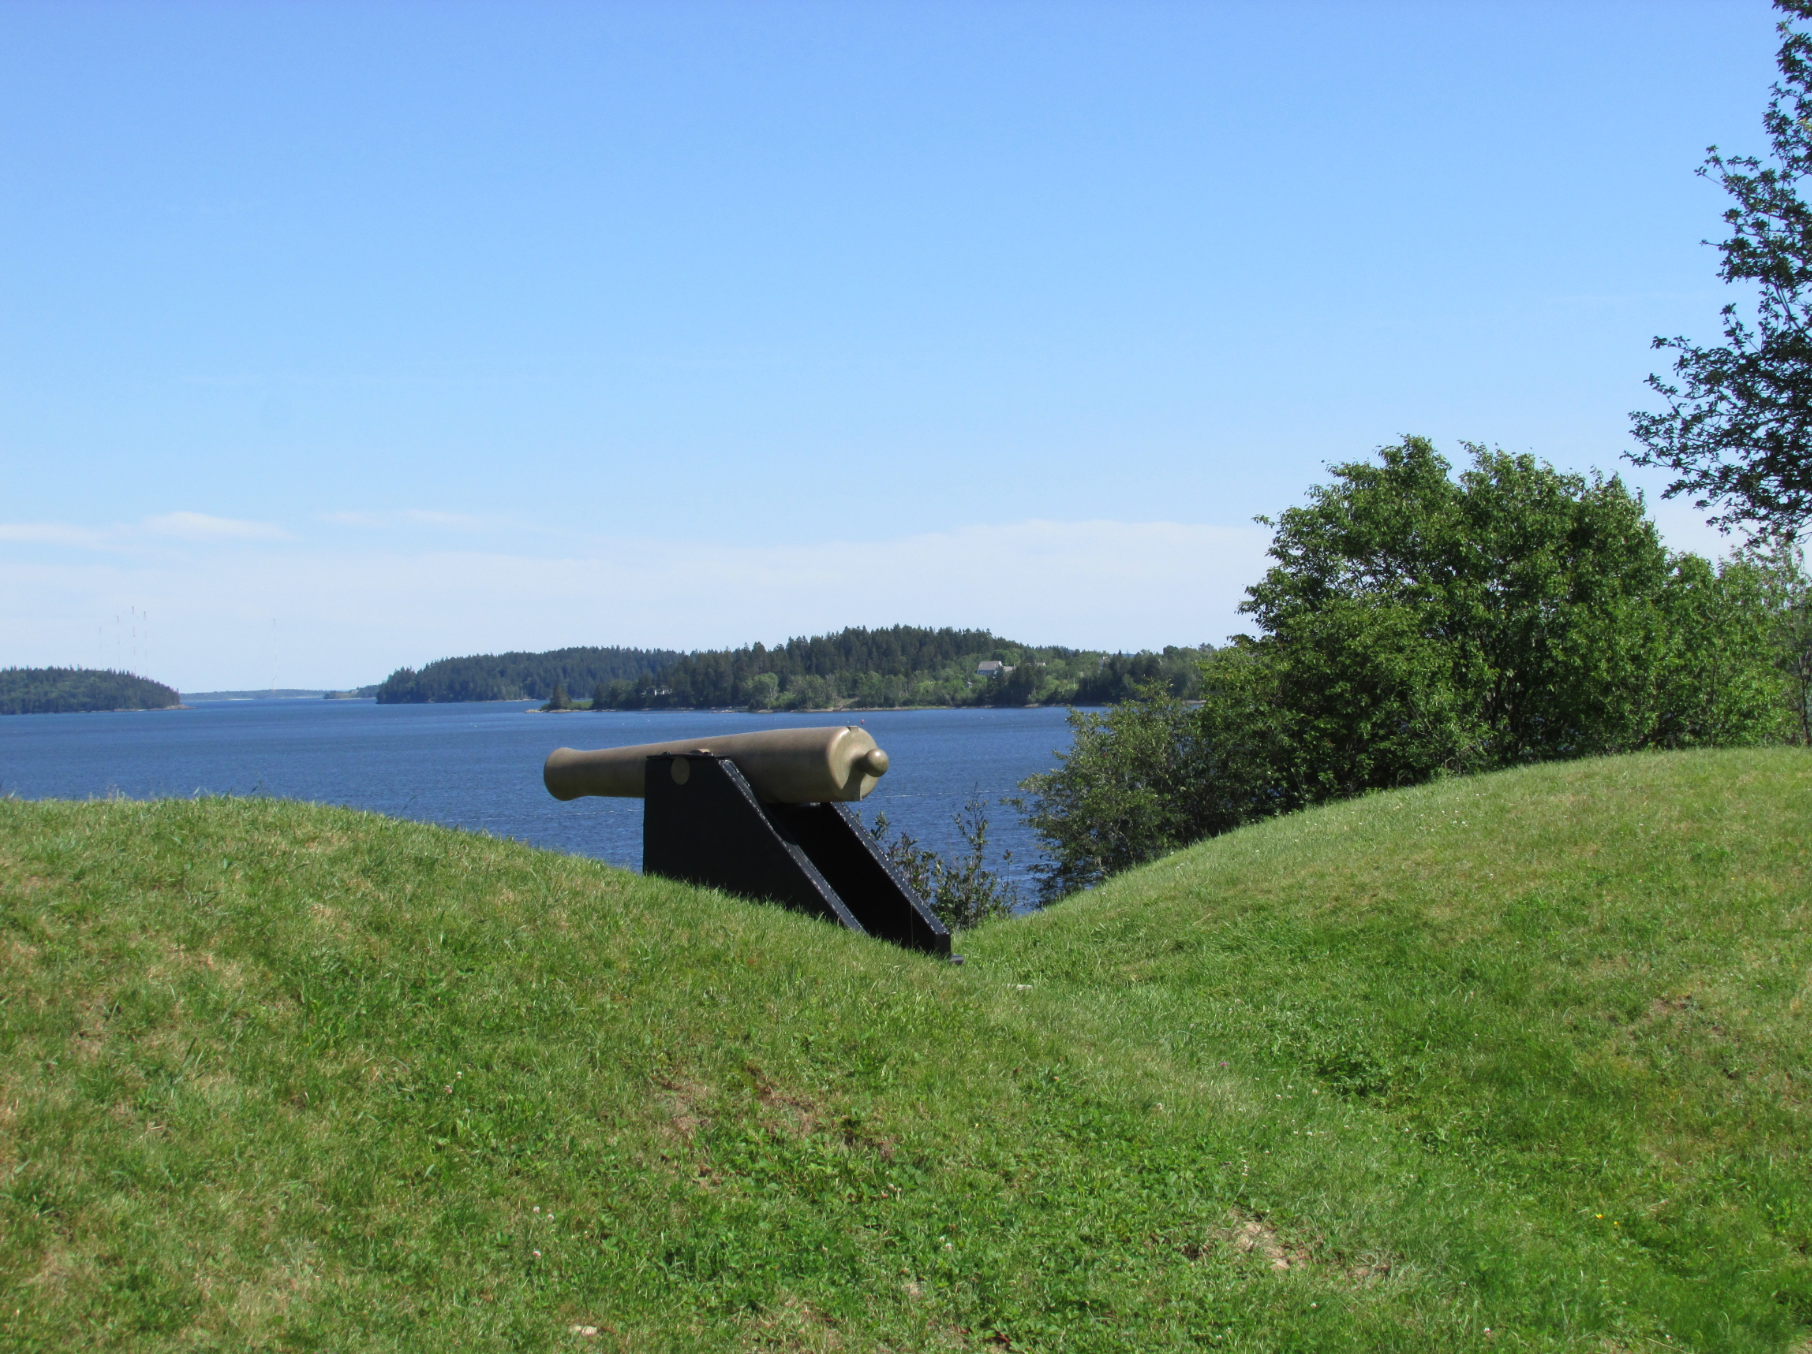 Fort O'Brien (also known as Fort Machias) in Machiasport, Maine